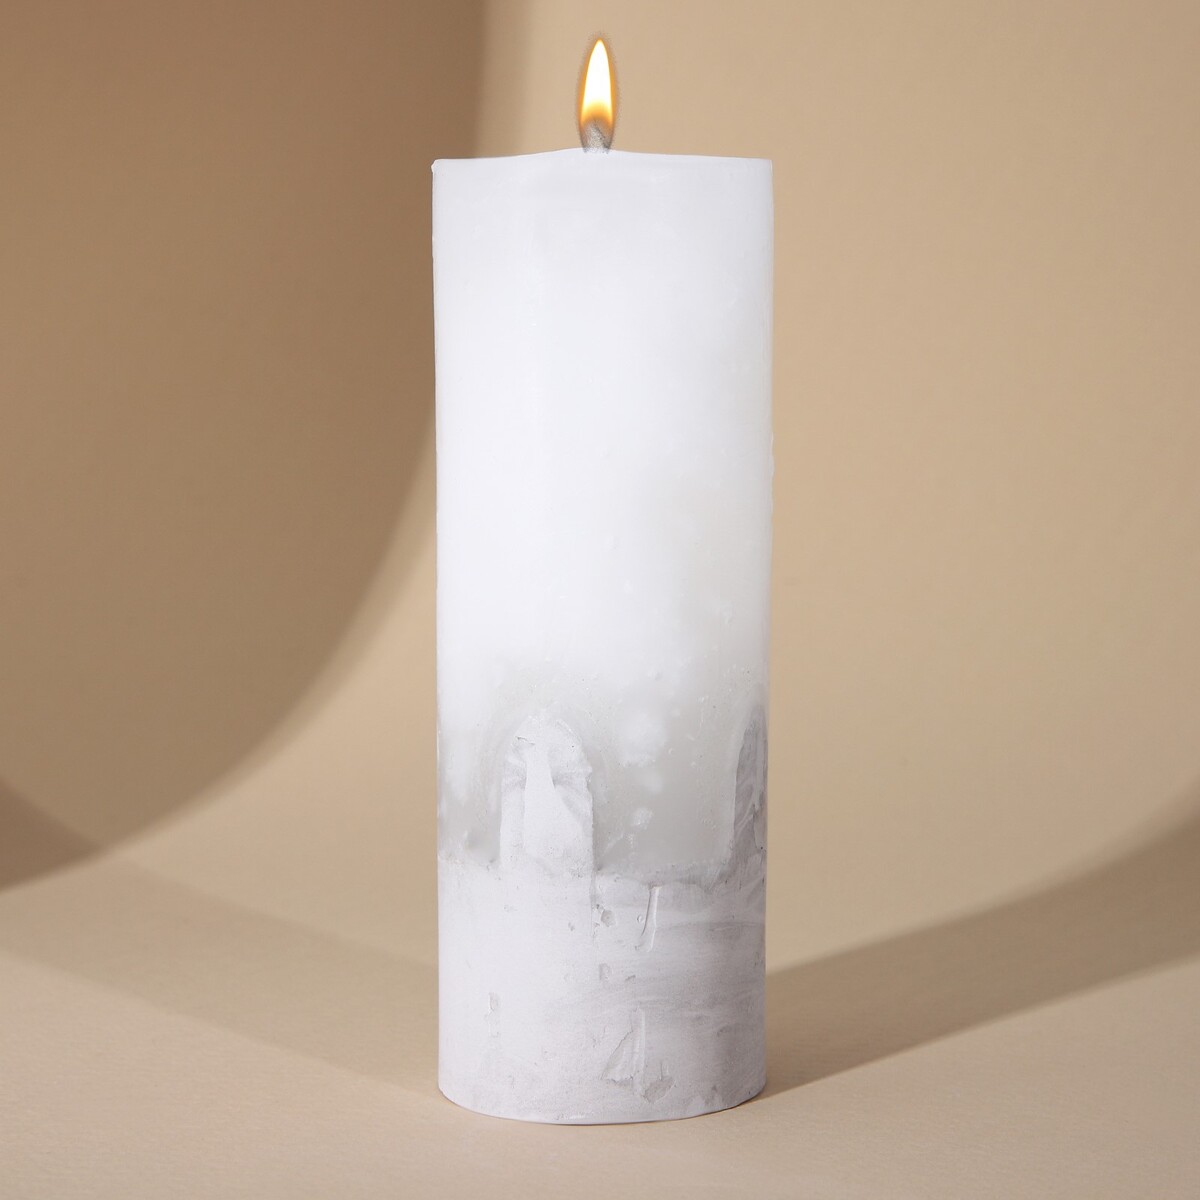 Свеча интерьерная белая с бетоном, 14 х 5 см свеча интерьерная белая с бетоном поталь 9 5 х 6 см